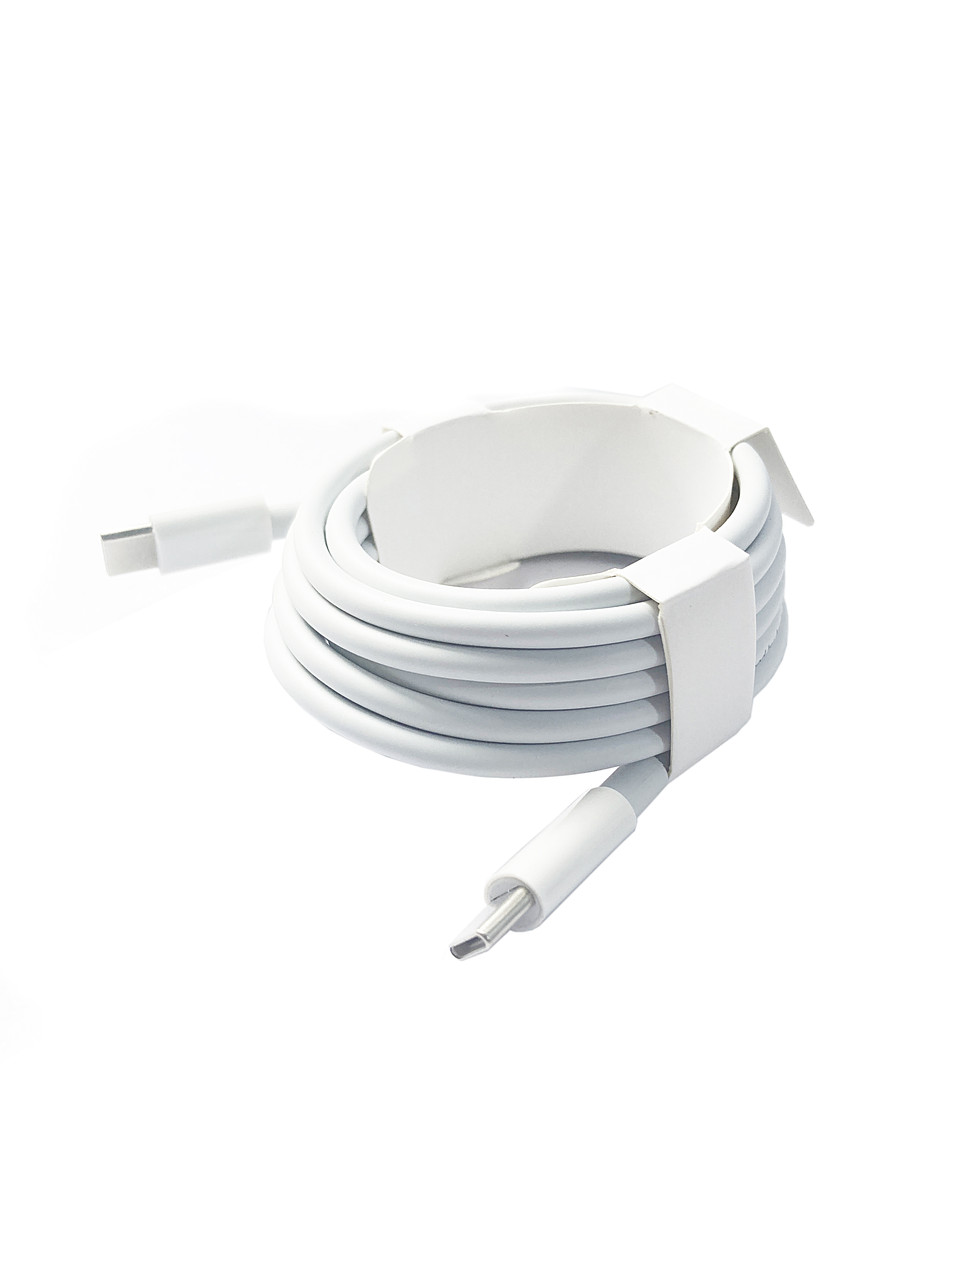 Кабель Apple USB-C (Original), USB-C & USB-C, длина 2.0 м, для блока питания Macbook Air/Pro, WHITE, oem